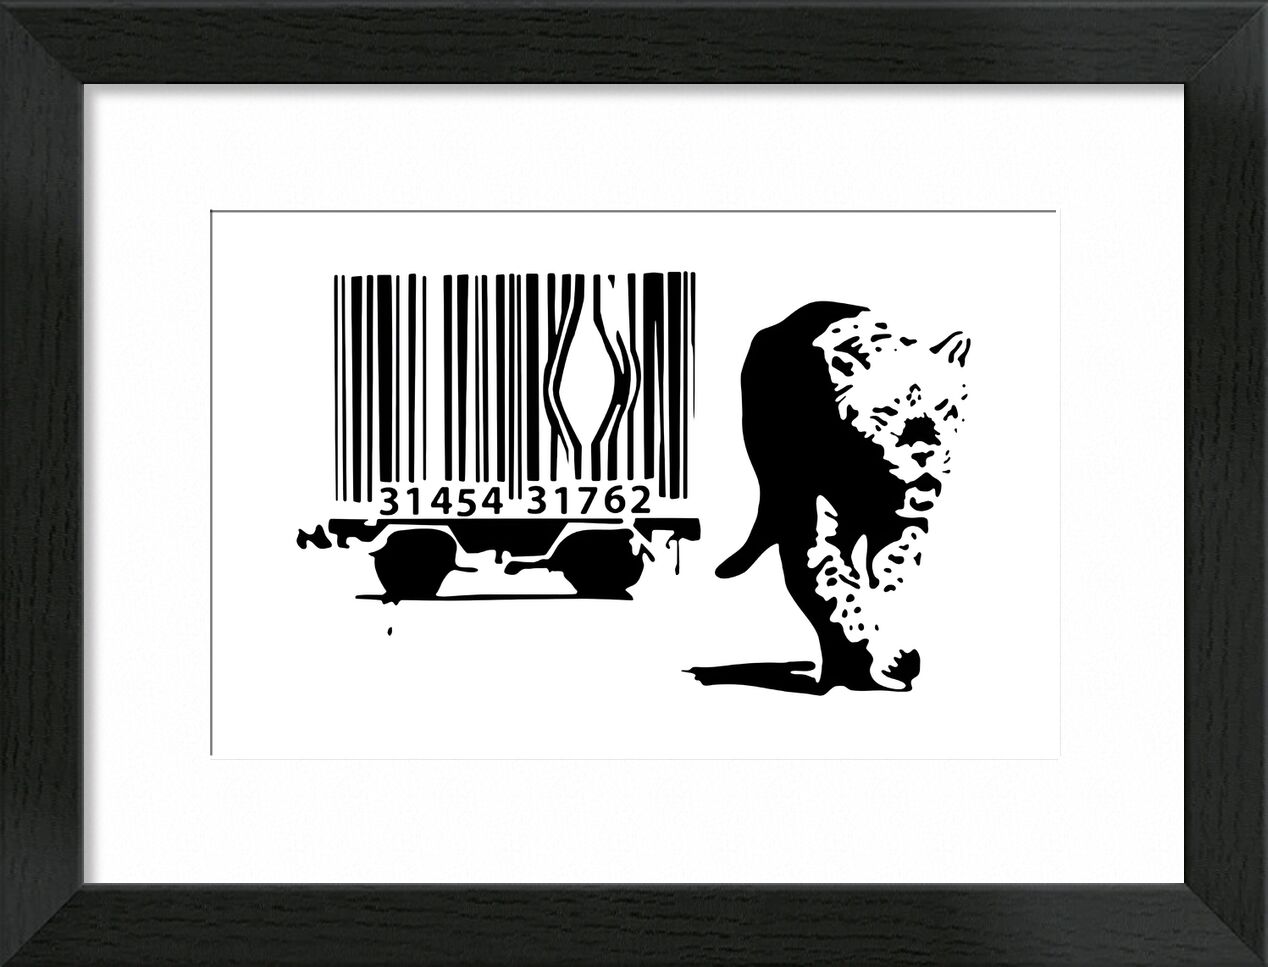 Barcode - BANKSY von Bildende Kunst, Prodi Art, Verbrauch, Barcode, Leopard, banksy